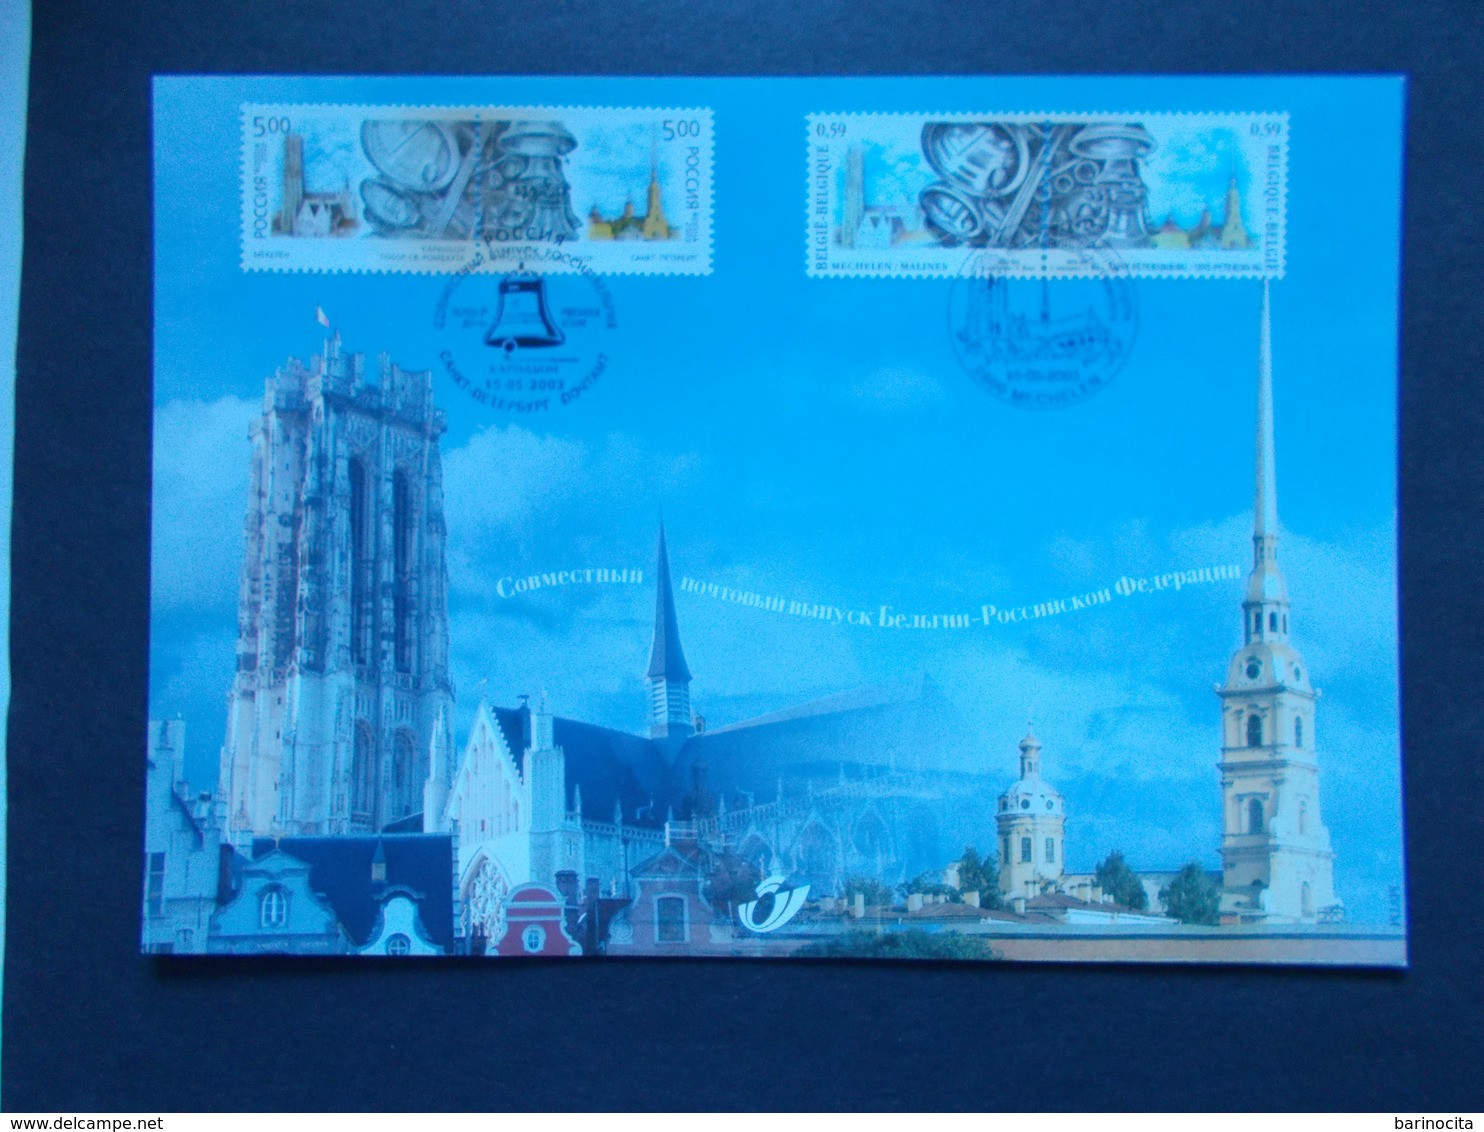 BELGIQUE -   N° 3170  HK  Année  2003   EMISSIONS  COMMUNES  RUSSIE    ( Voir Photo ) 68 - Cartes Souvenir – Emissions Communes [HK]